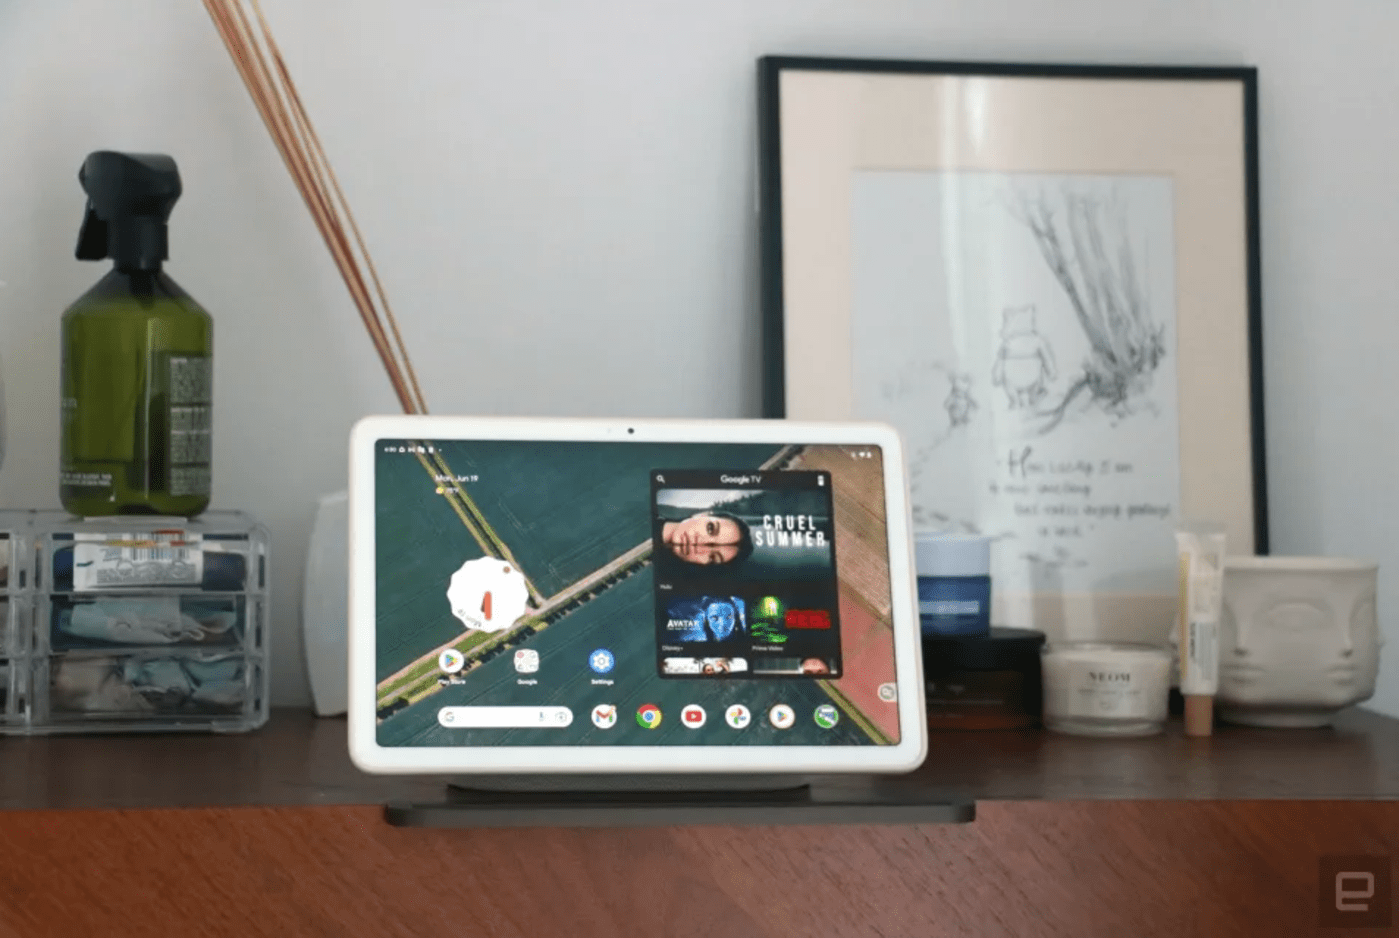 La tableta Google Pixel con base de altavoz de carga tiene actualmente un descuento de $ 130